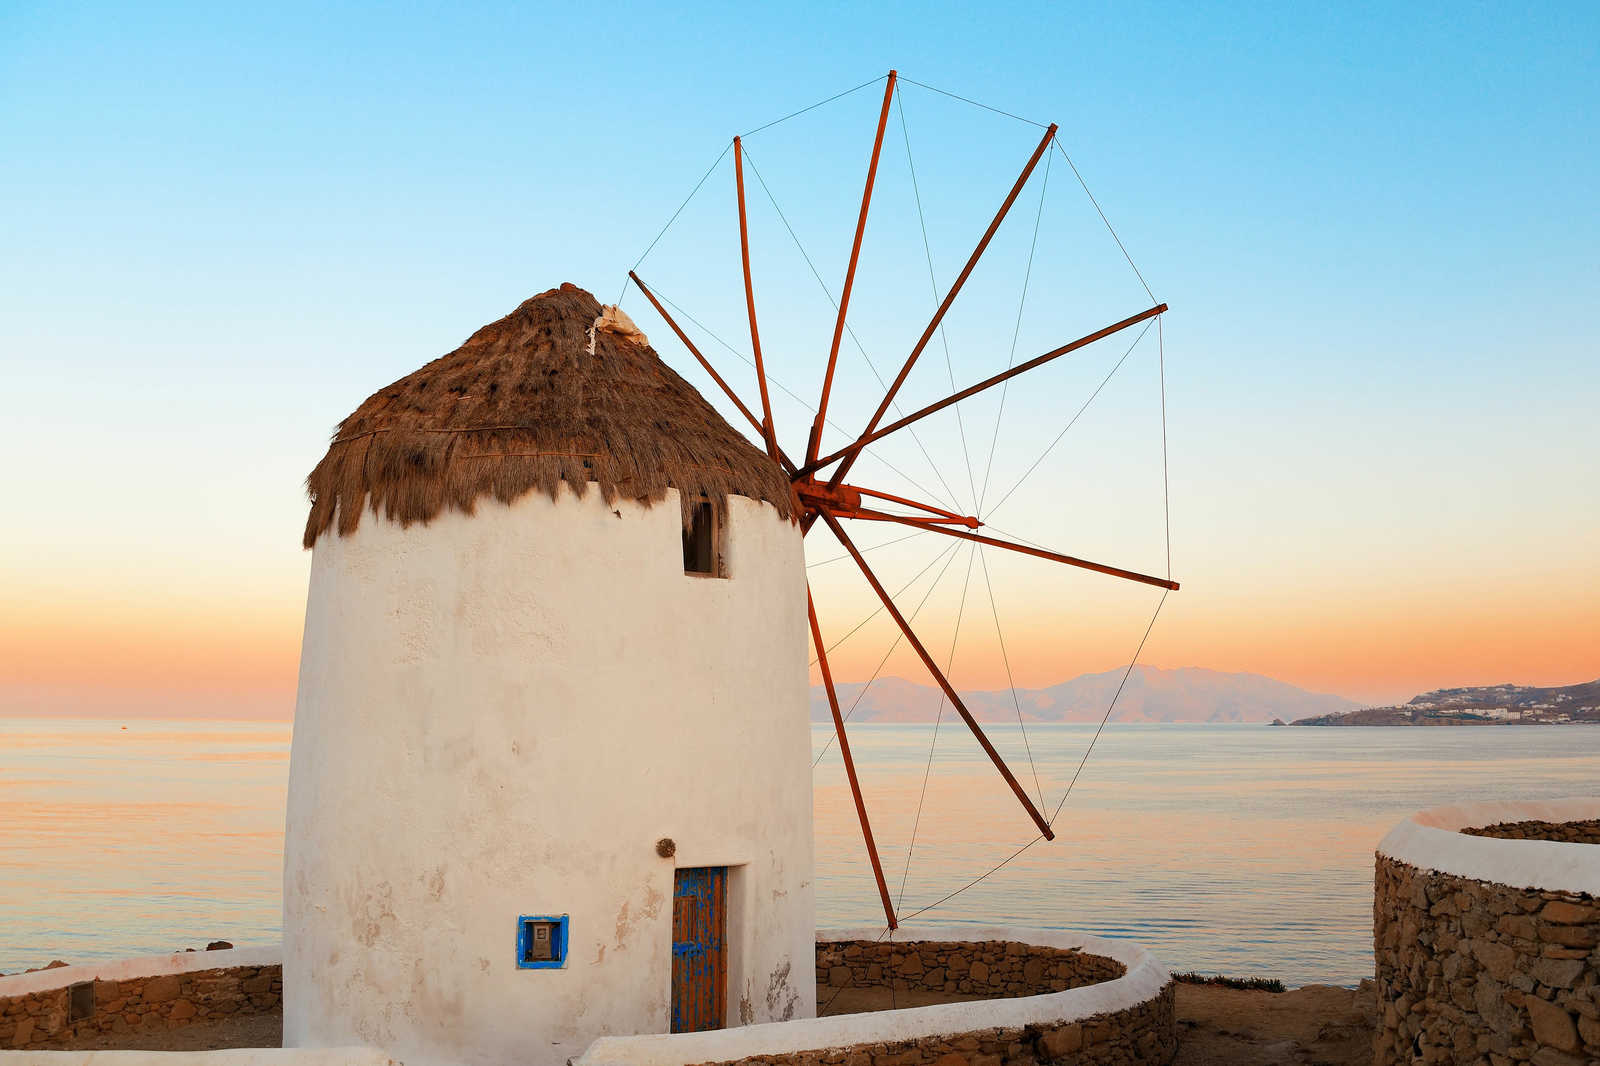             Leinwandbild griechische Windmühle an der Küste – 0,90 m x 0,60 m
        